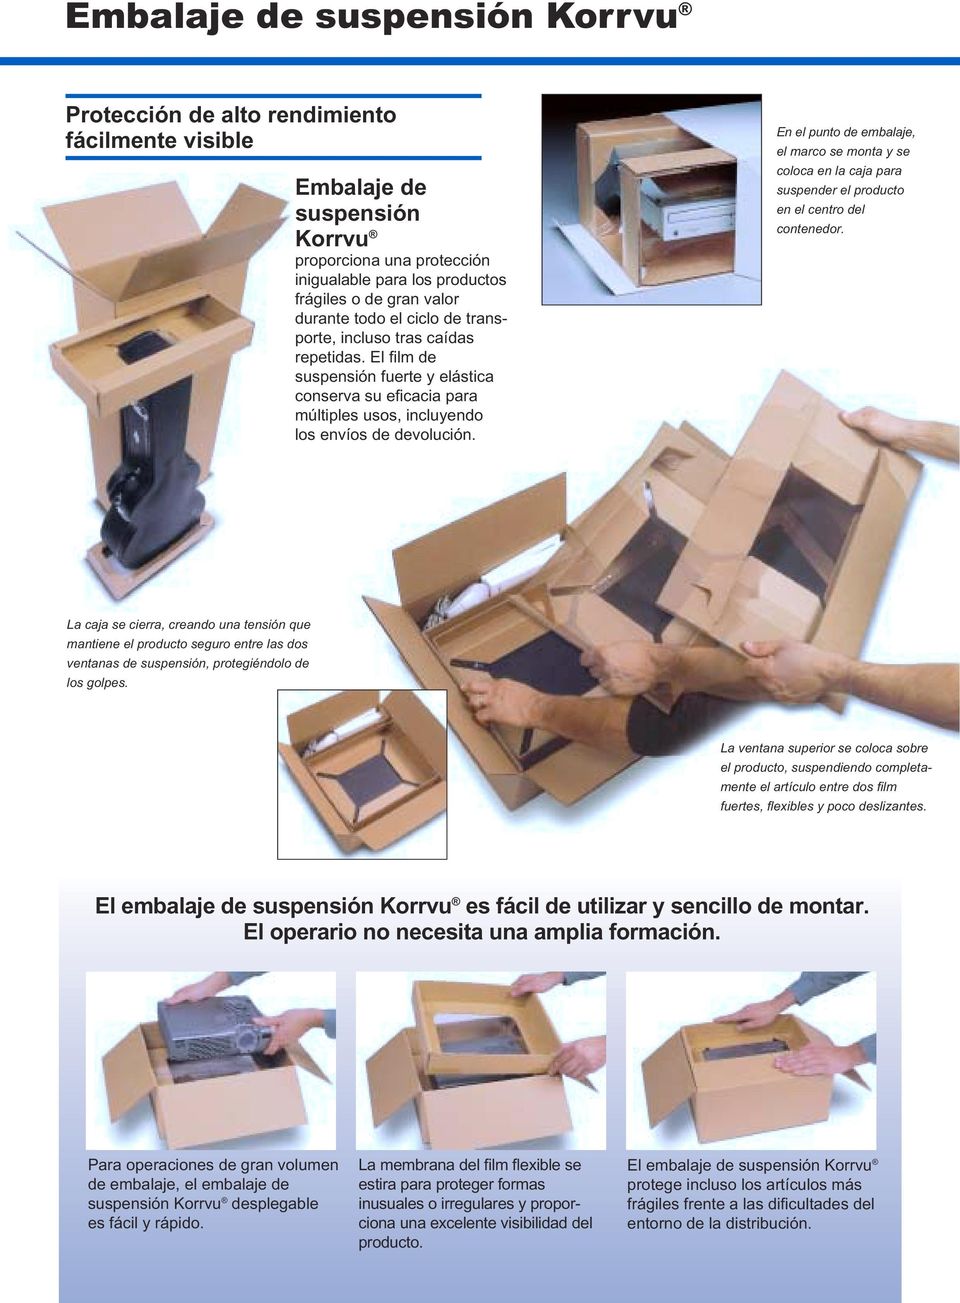 En el punto de embalaje, el marco se monta y se coloca en la caja para suspender el producto en el centro del contenedor.